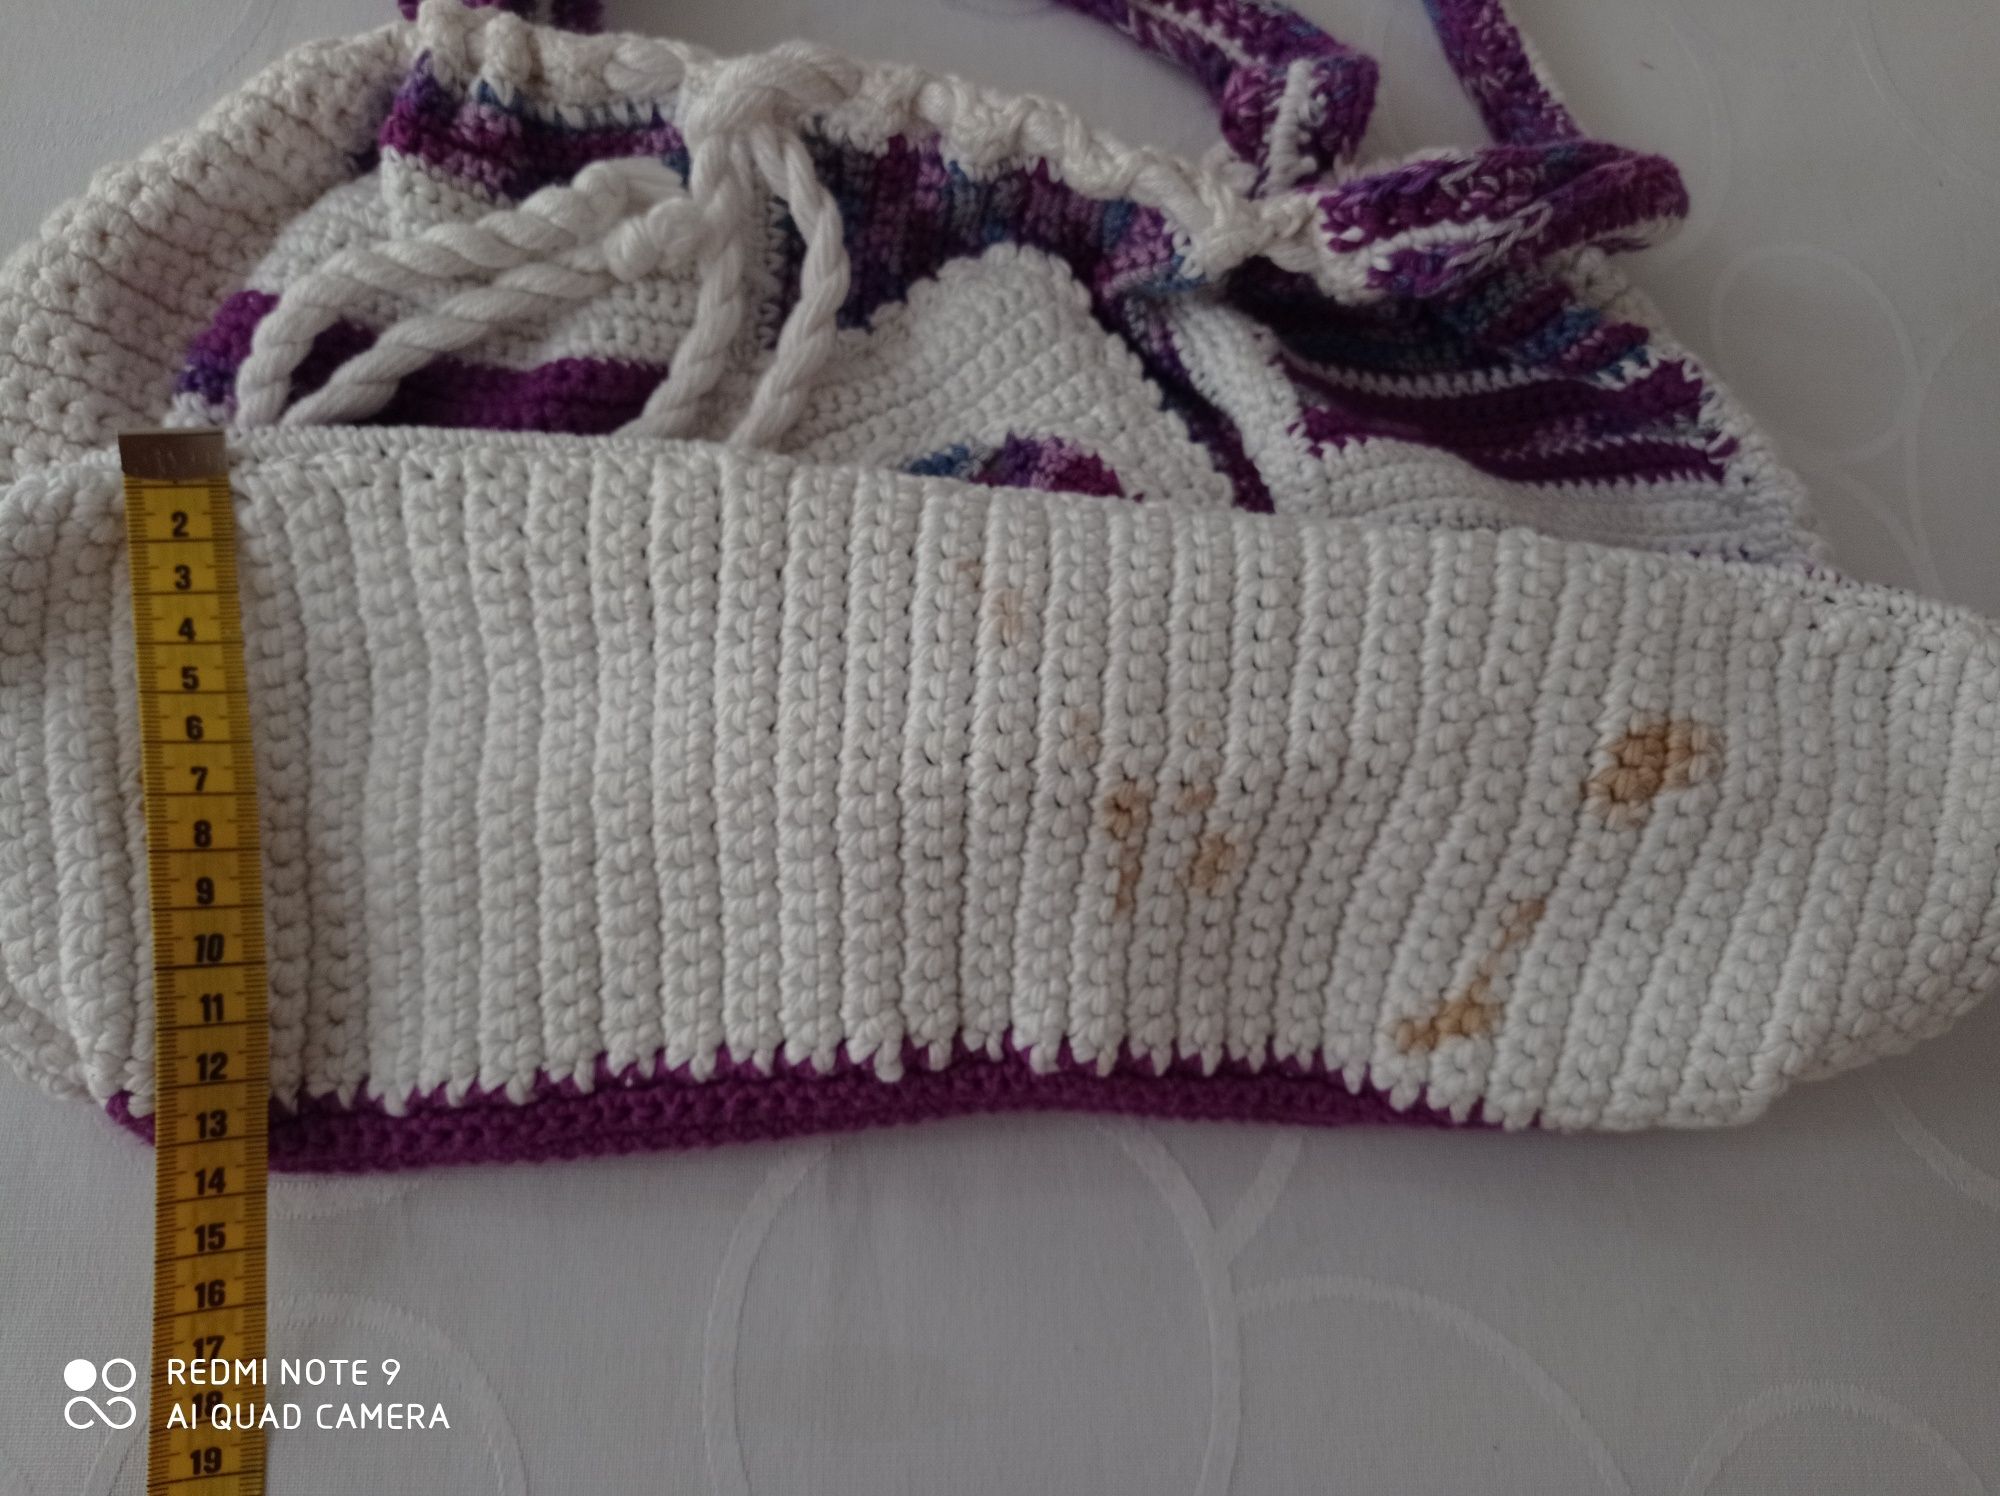 Fioletowo biała torebka ze sznurka bawełnianego. Wykonana na zamowieni